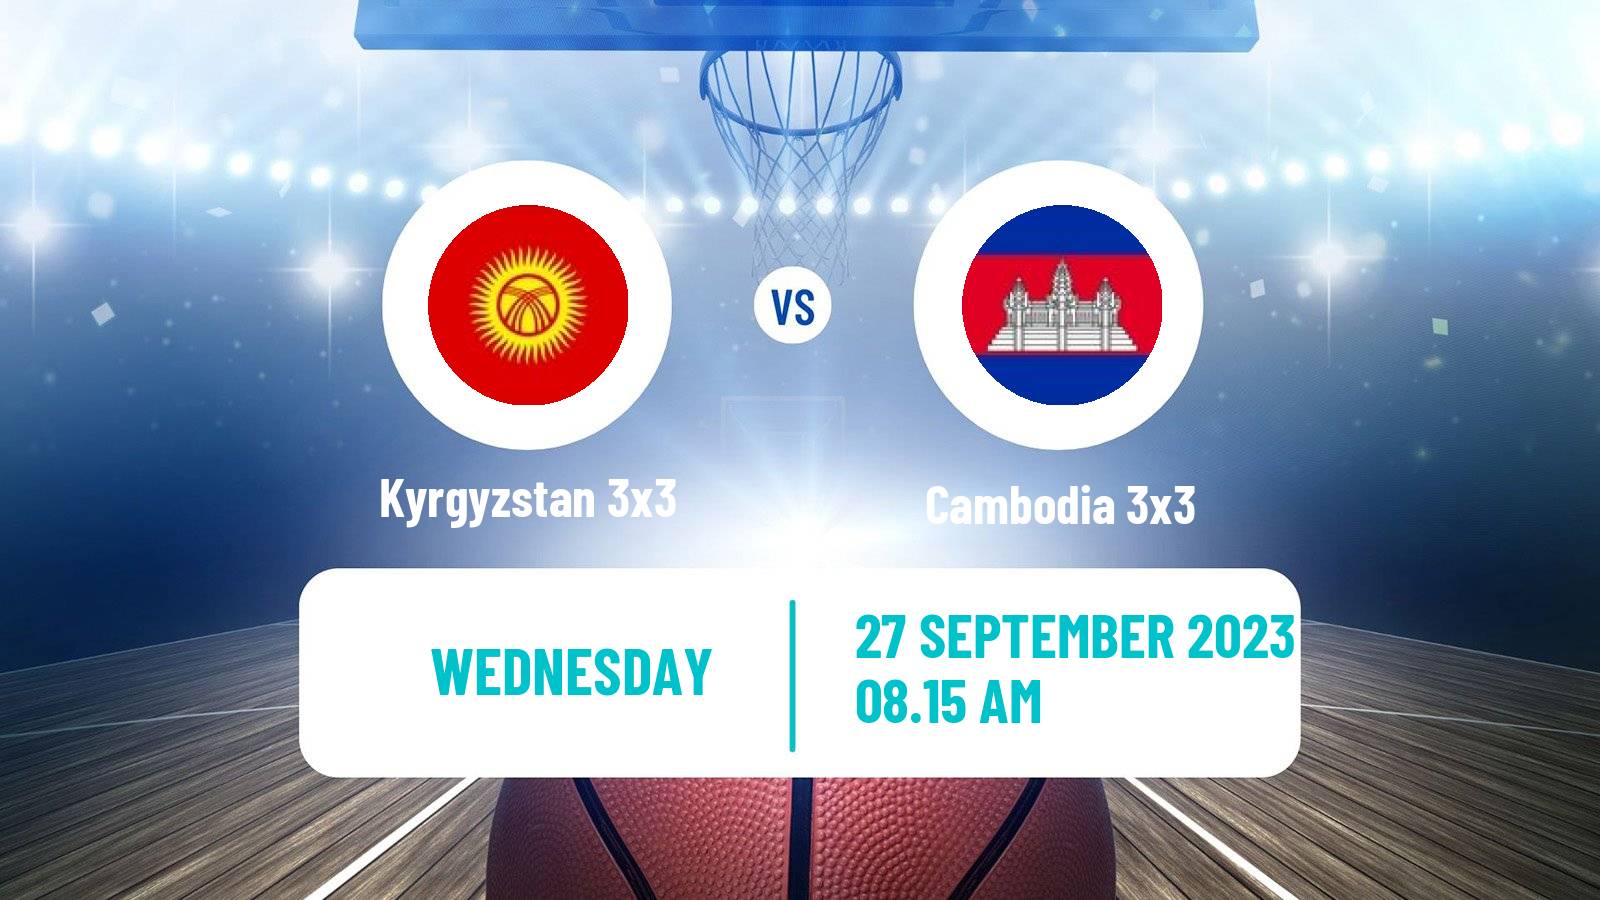 Basketball Asian Games Basketball 3x3 Kyrgyzstan 3x3 - Cambodia 3x3